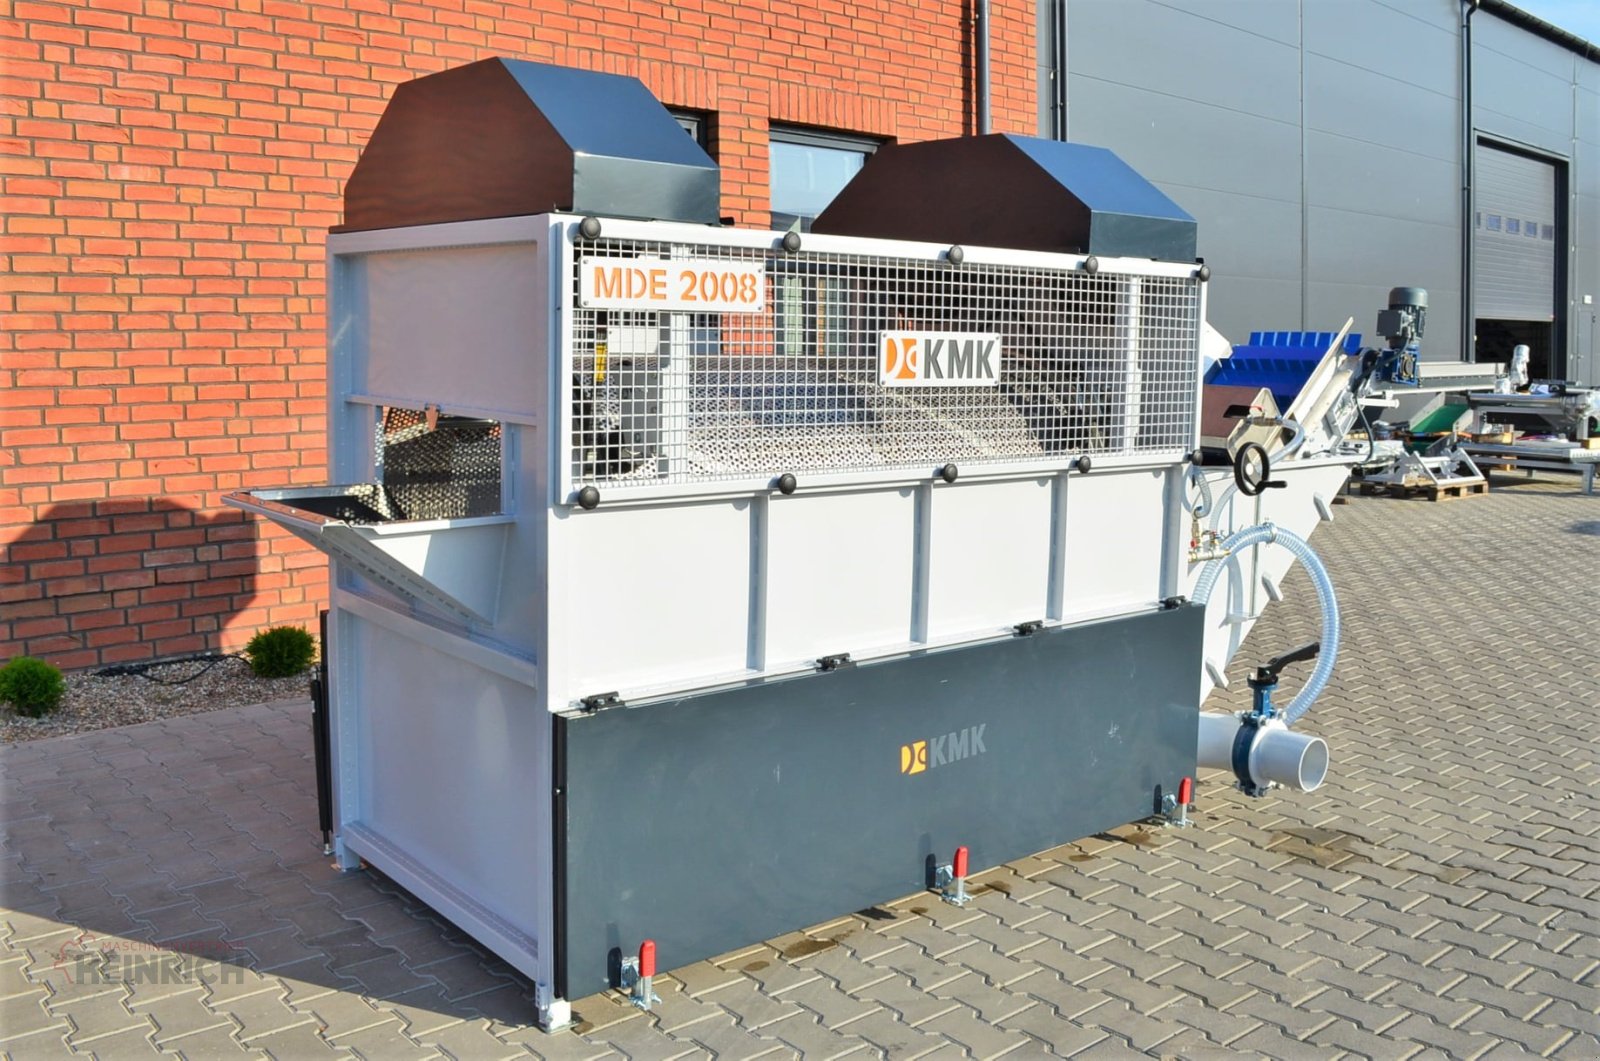 Sonstige Kartoffeltechnik типа KMK Trommelwaschmaschine MD2008 Kartoffel waschen, Waschmaschine, Neumaschine в Ehekirchen (Фотография 2)